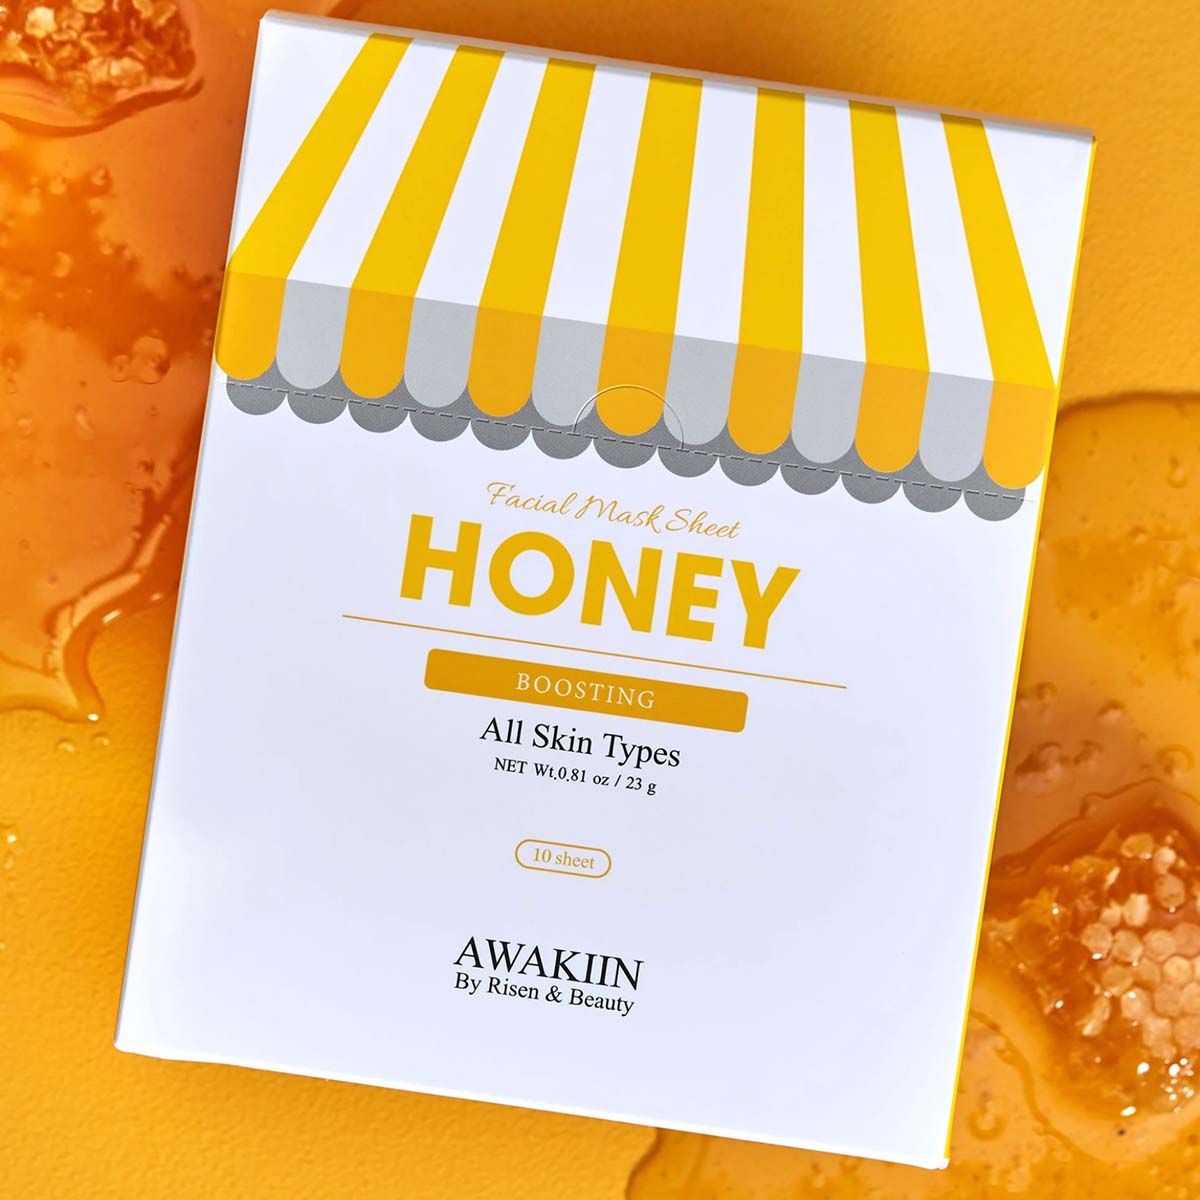 AWAKIIN - Honey Face Mask 10pcs